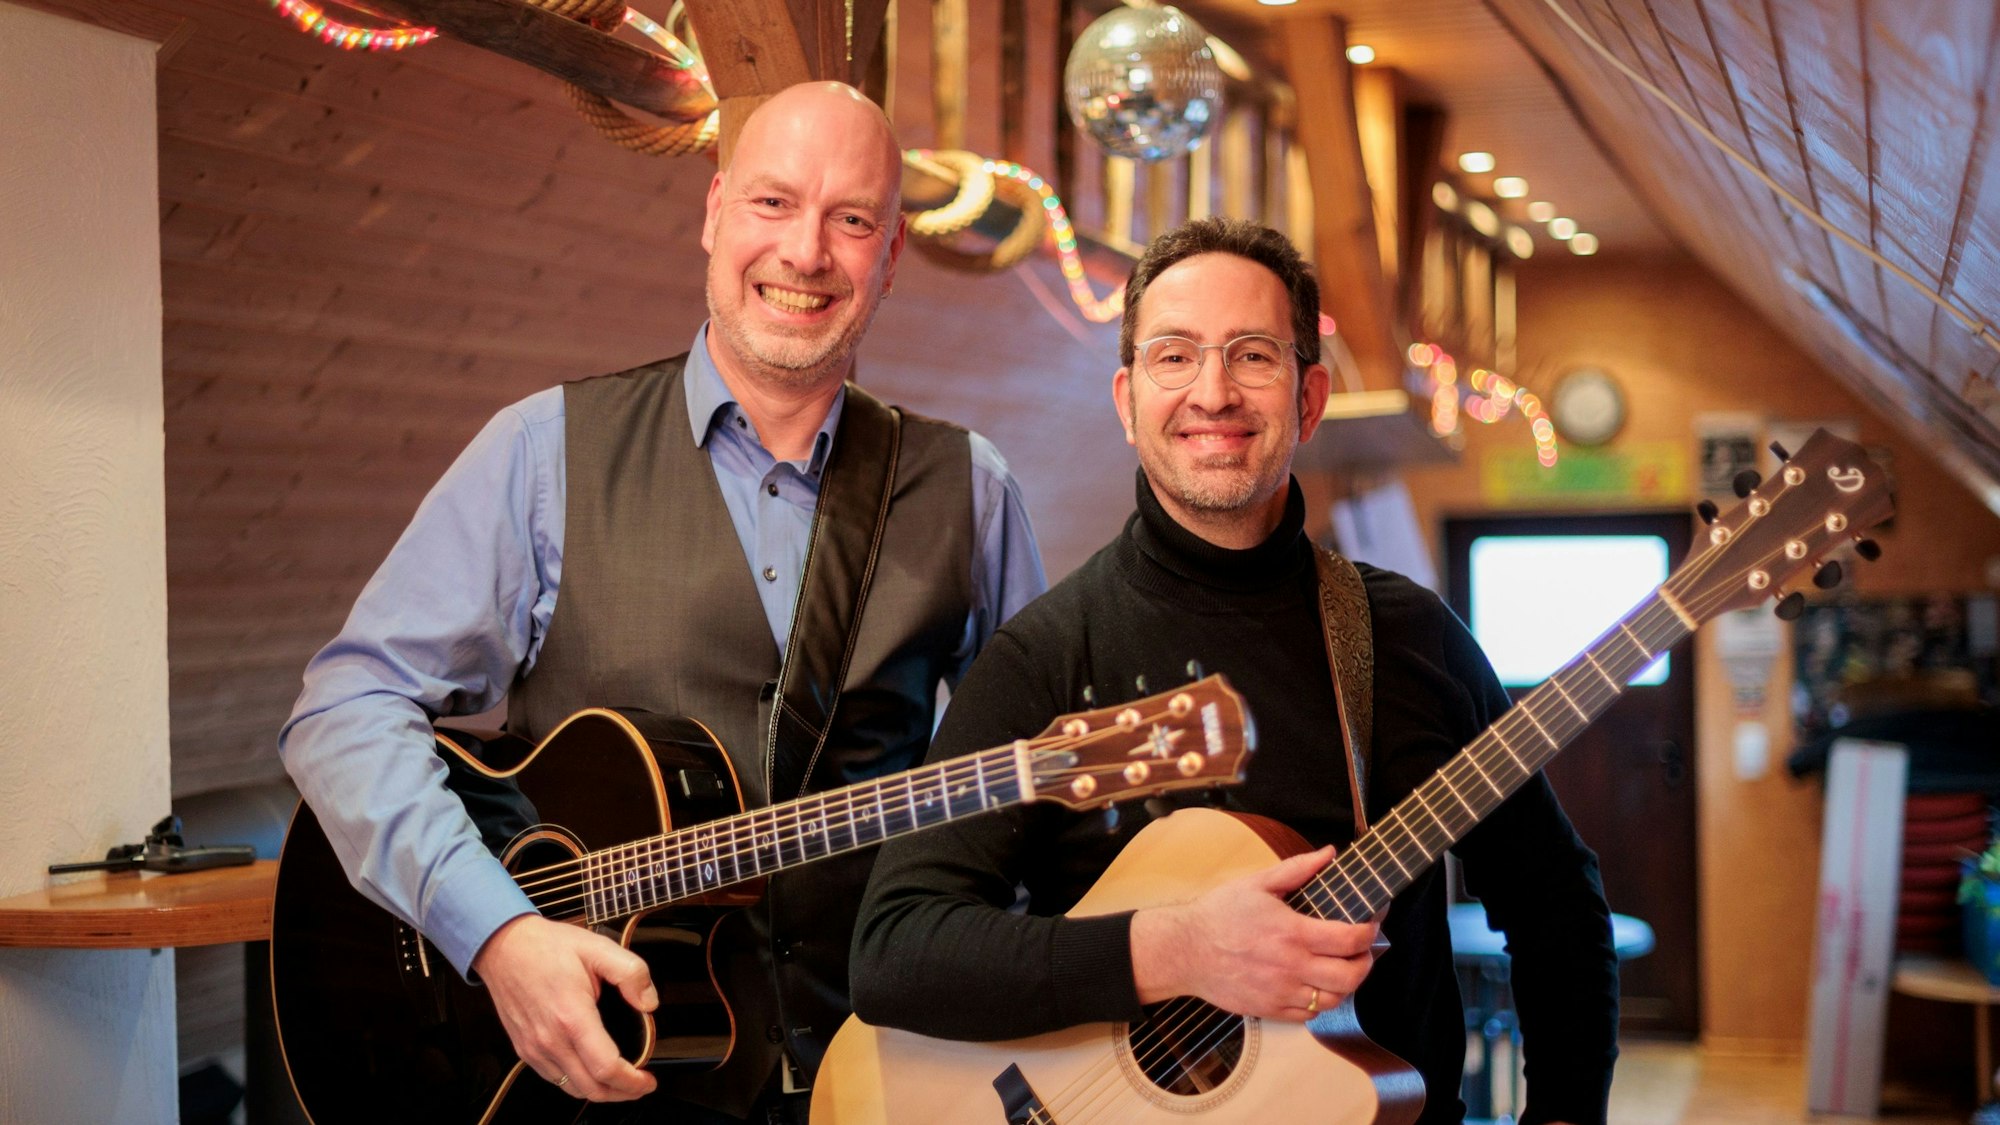 Die beiden Männer posieren mit ihren Gitarren und blicken lächelnd in die Kamera.